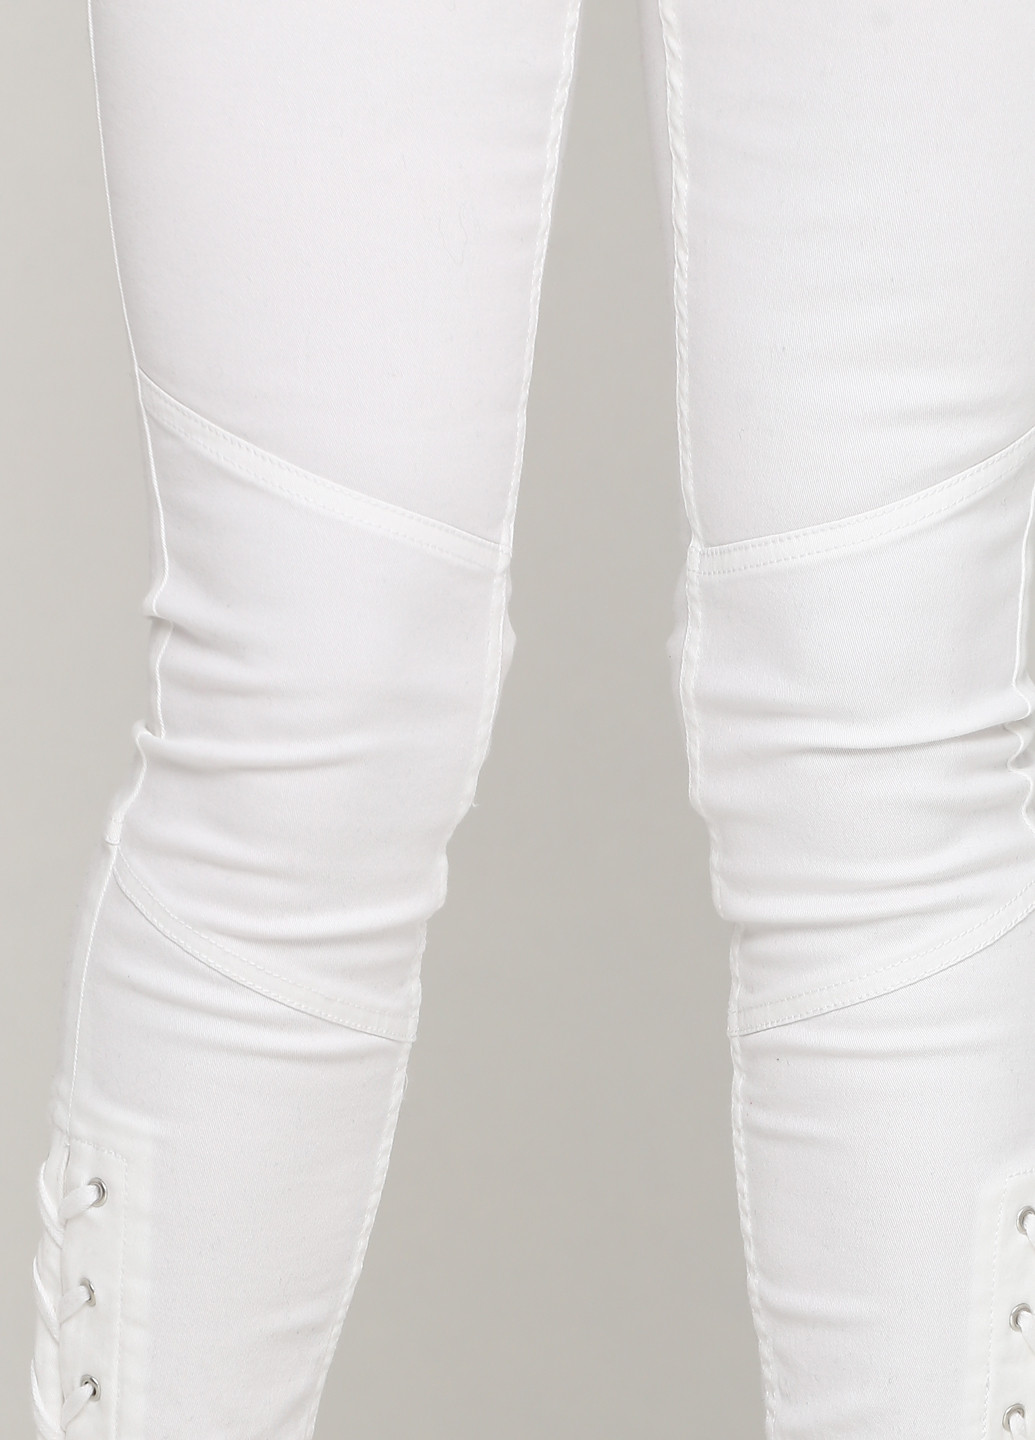 Белые демисезонные слим джинсы H&M